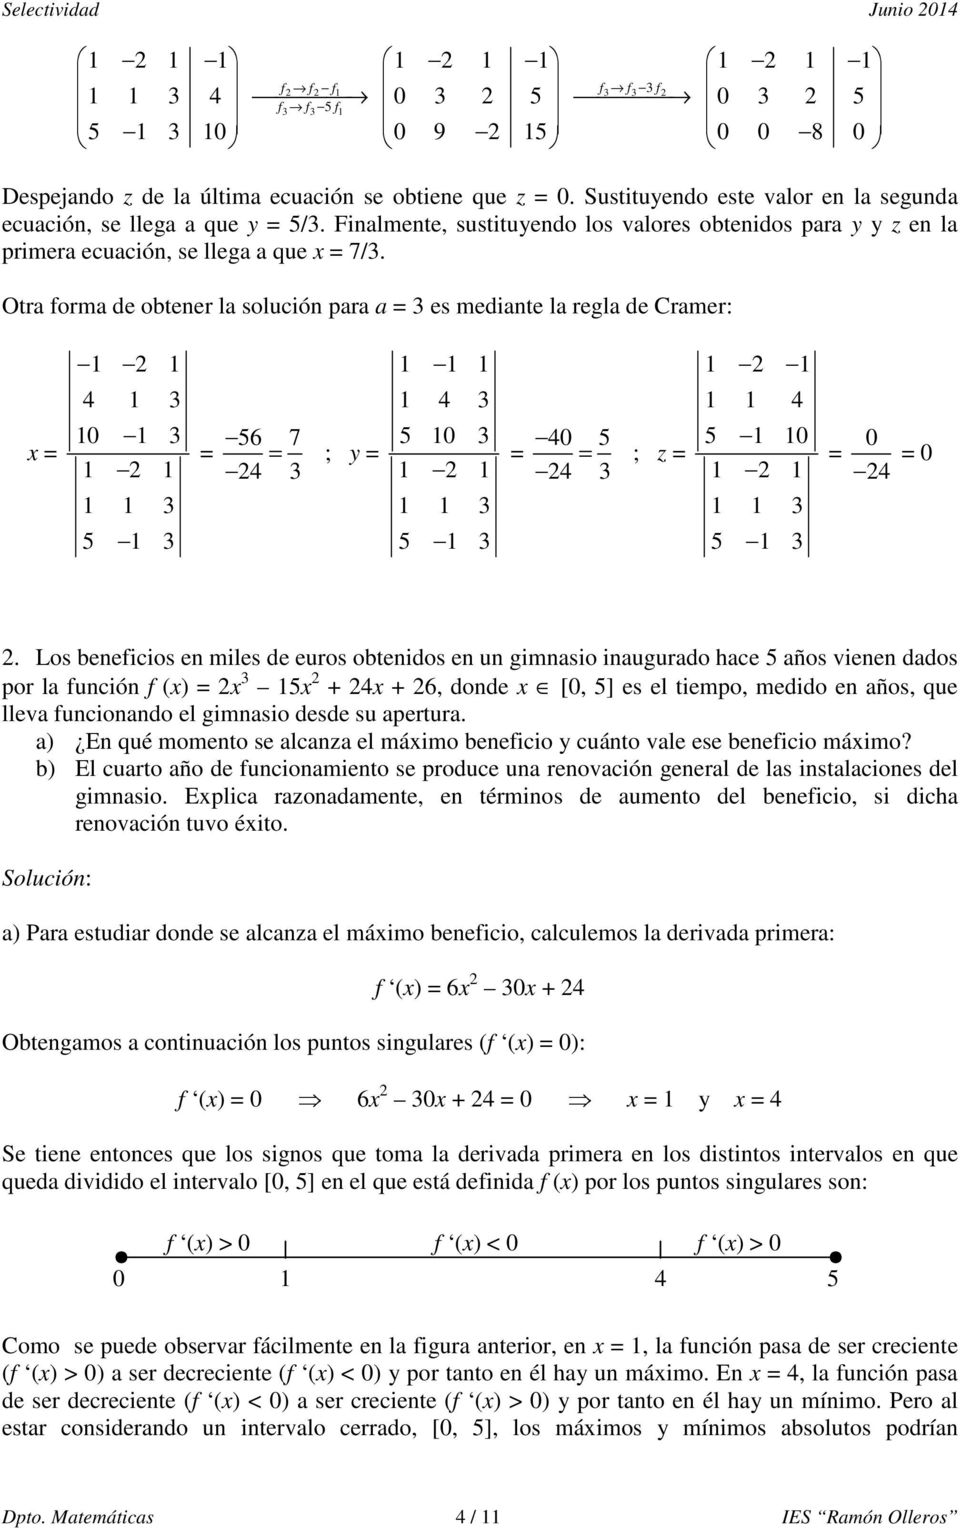 Otra forma de obtener la solución para a = 3 es mediante la regla de Cramer: x = 1 2 1 4 1 3 10 1 3 1 2 1 1 1 3 5 1 3 = 56 7 = 24 3 ; y = 1 1 1 1 4 3 5 10 3 1 2 1 1 1 3 5 1 3 = 40 5 = 24 3 ; z = 1 2